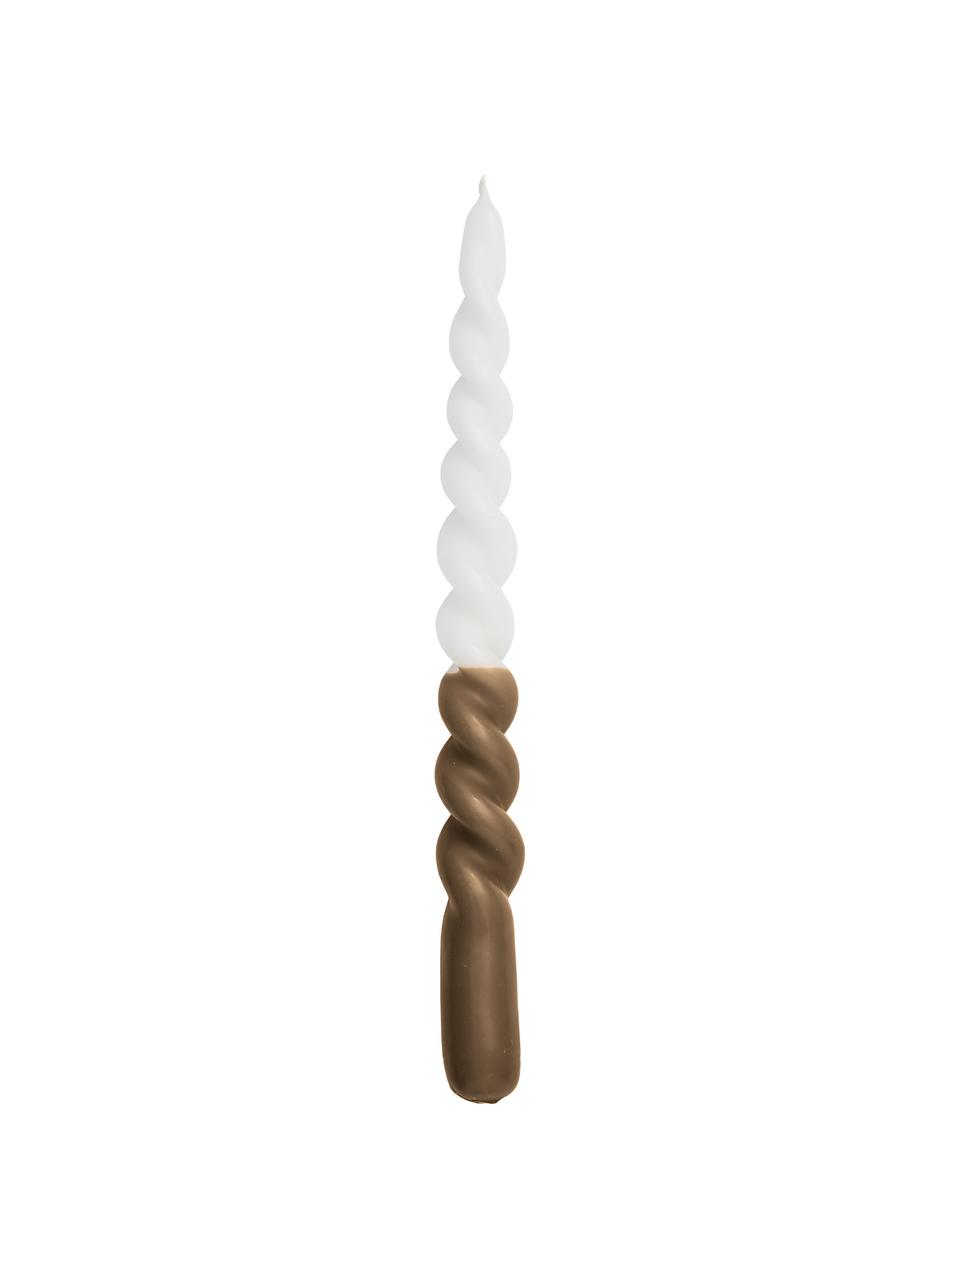 Gedraaide kaarsen Twister, 2 stuks, Paraffinewas, Wit, bruin, Ø 2 x H 25 cm